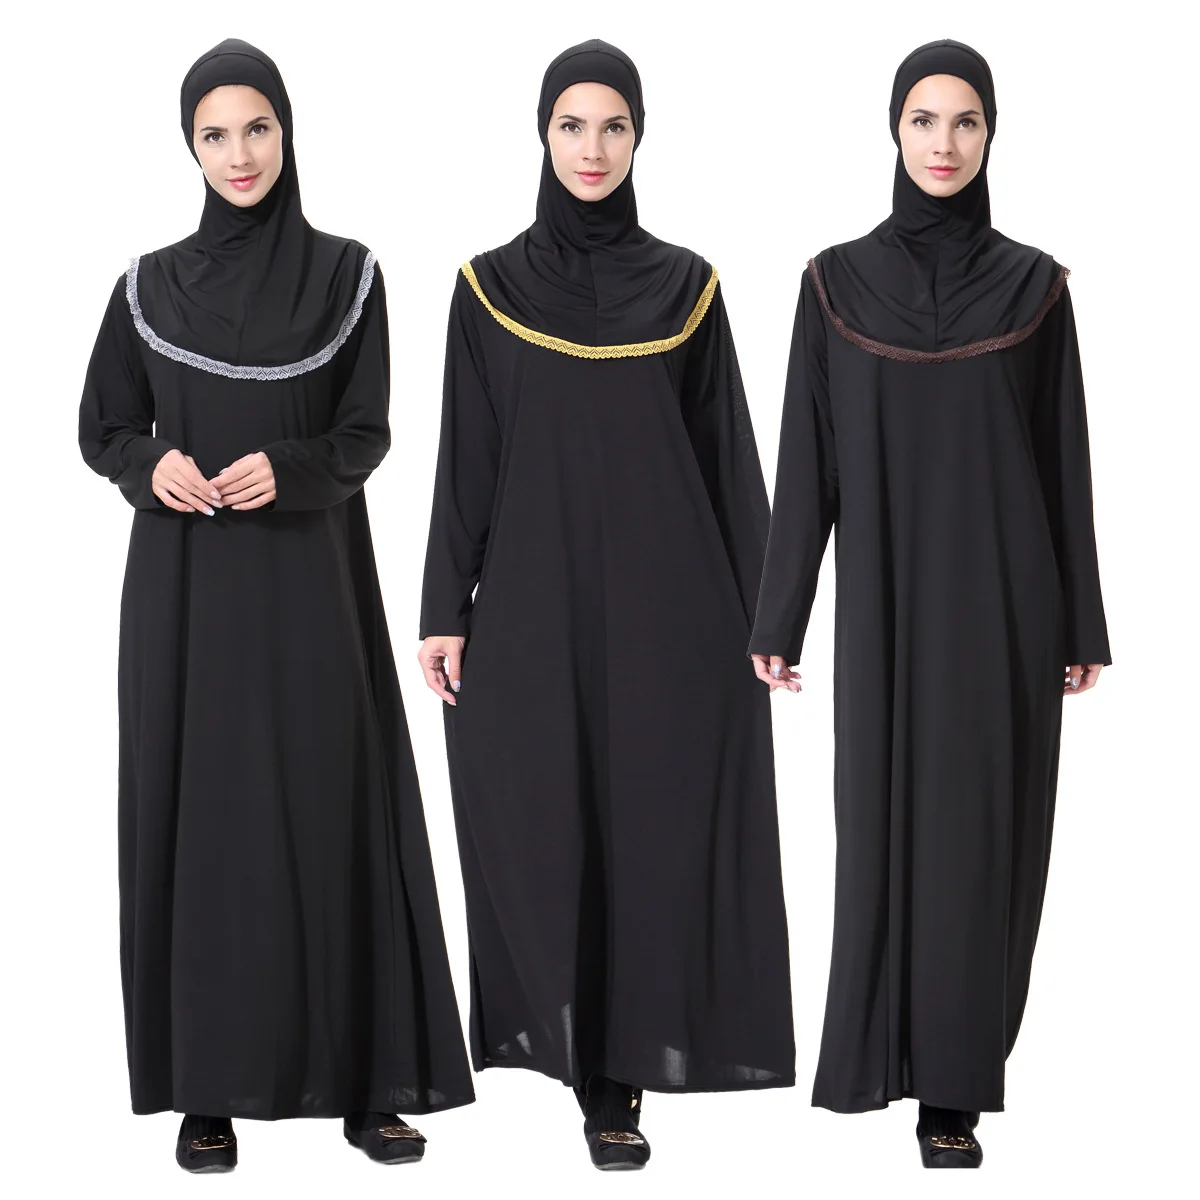 Черный Гладкий мягкий абайя для молитв мусульманский женский халат |